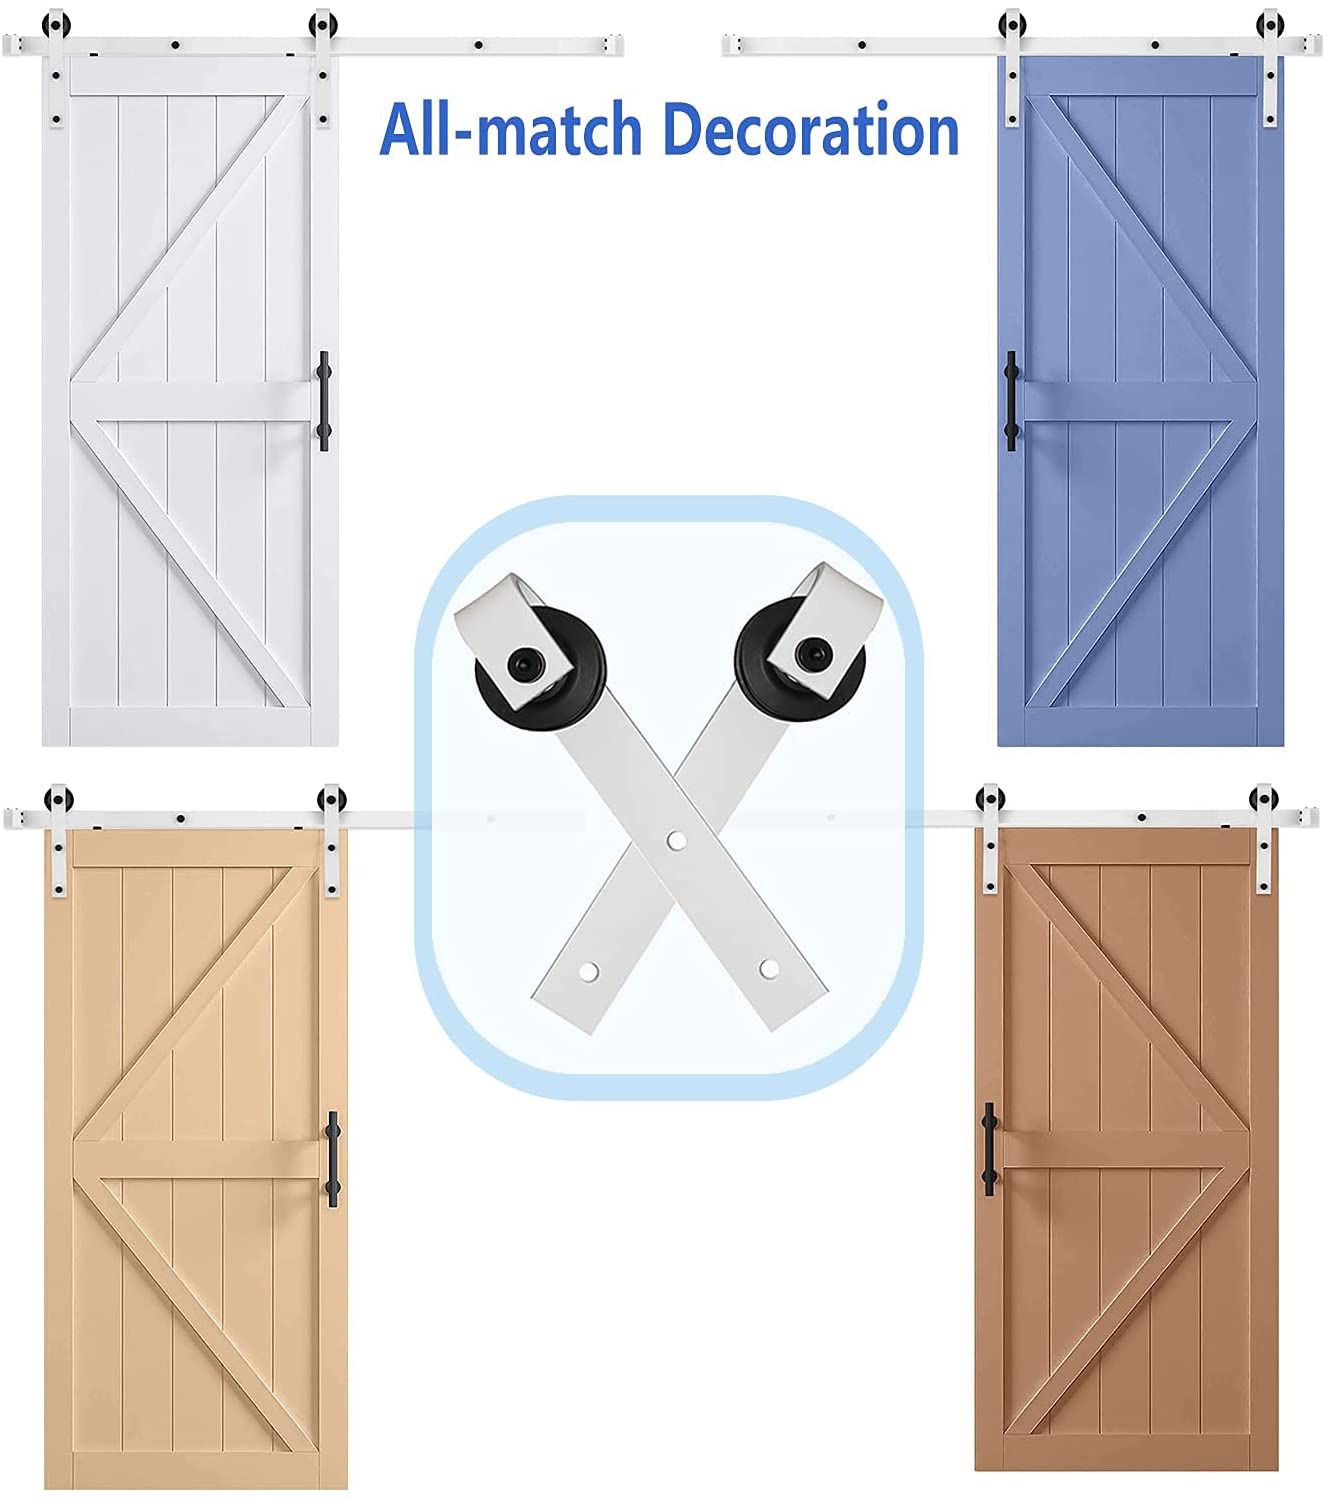 Barn Door Kit, Arcwares 6.6FT Sliding Door Track, Easy to Install- Fit 1 3/8-1 3/4" Thickness & 40" Wide Door Panel